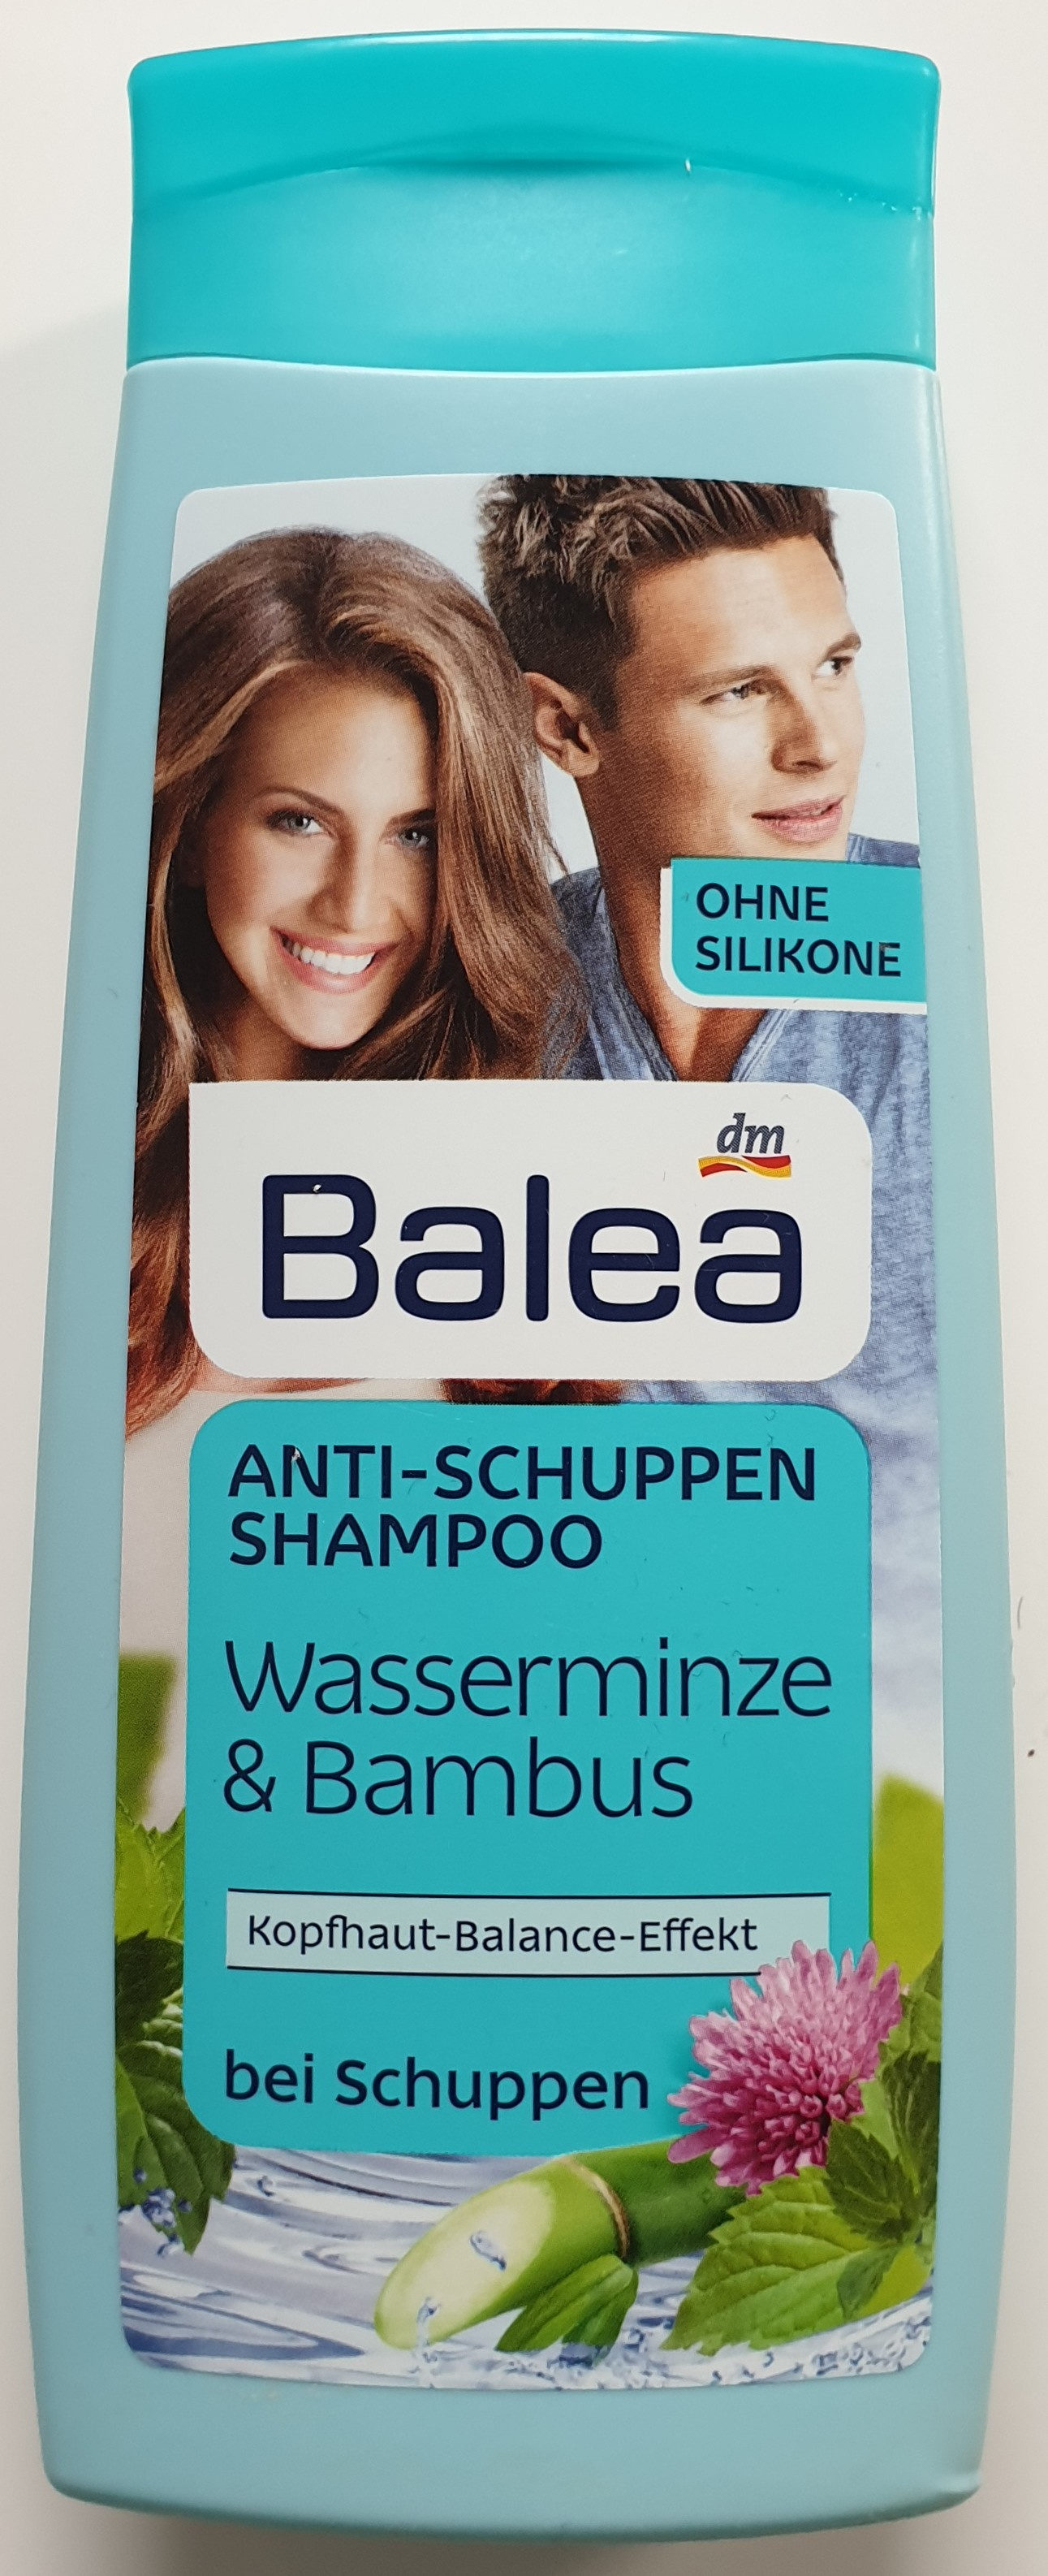 Anti-Schuppen Shampoo Wasserminze & Bambus - Produkt - de